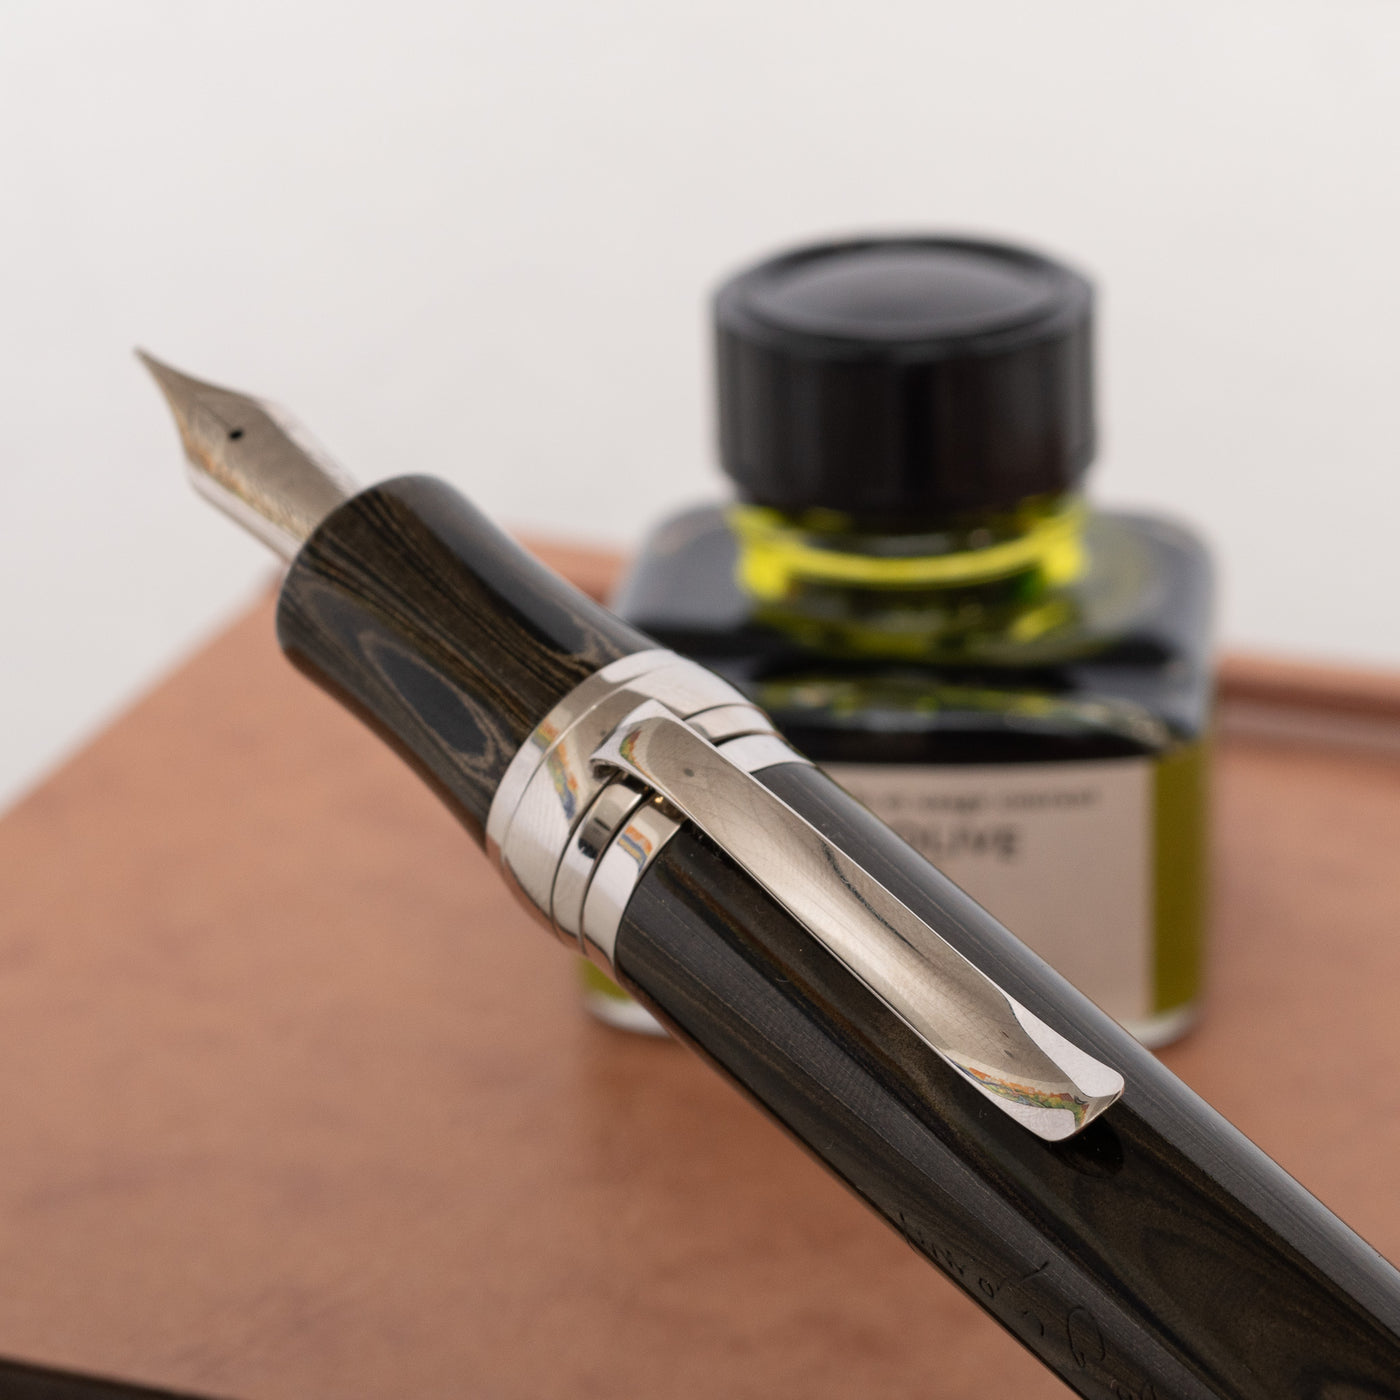 Stipula Leonardo da Vinci Tobacco Burst Ebonite Limited Edition Fountain Pen pen clip